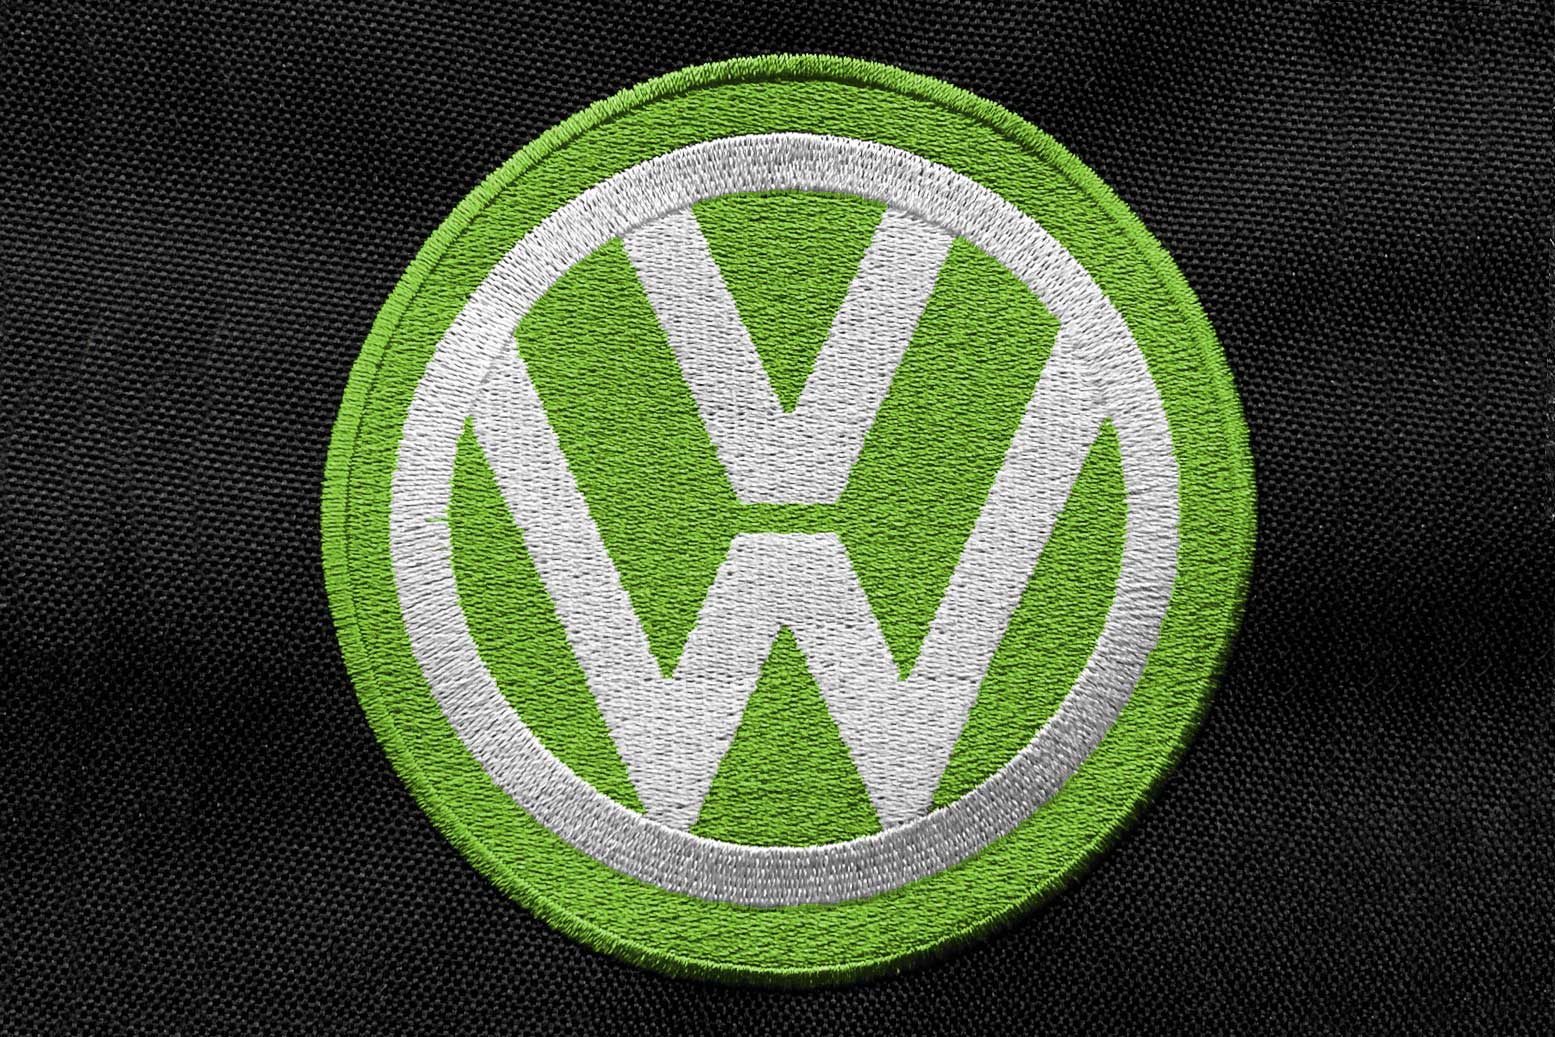 classic volkswagen logo font